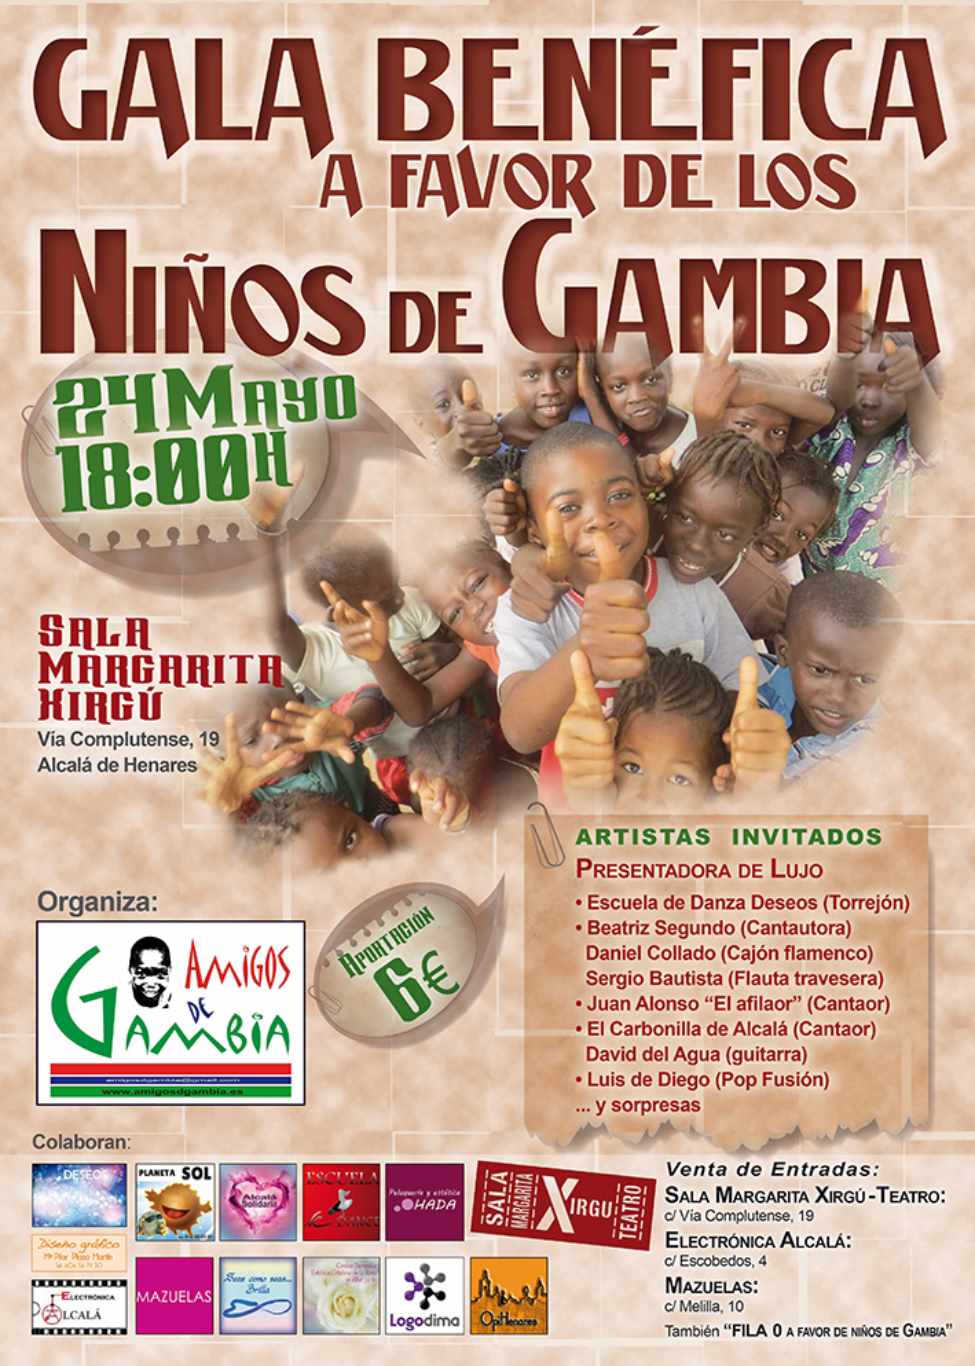 Gala benéfica a favor de los niños de Gambia